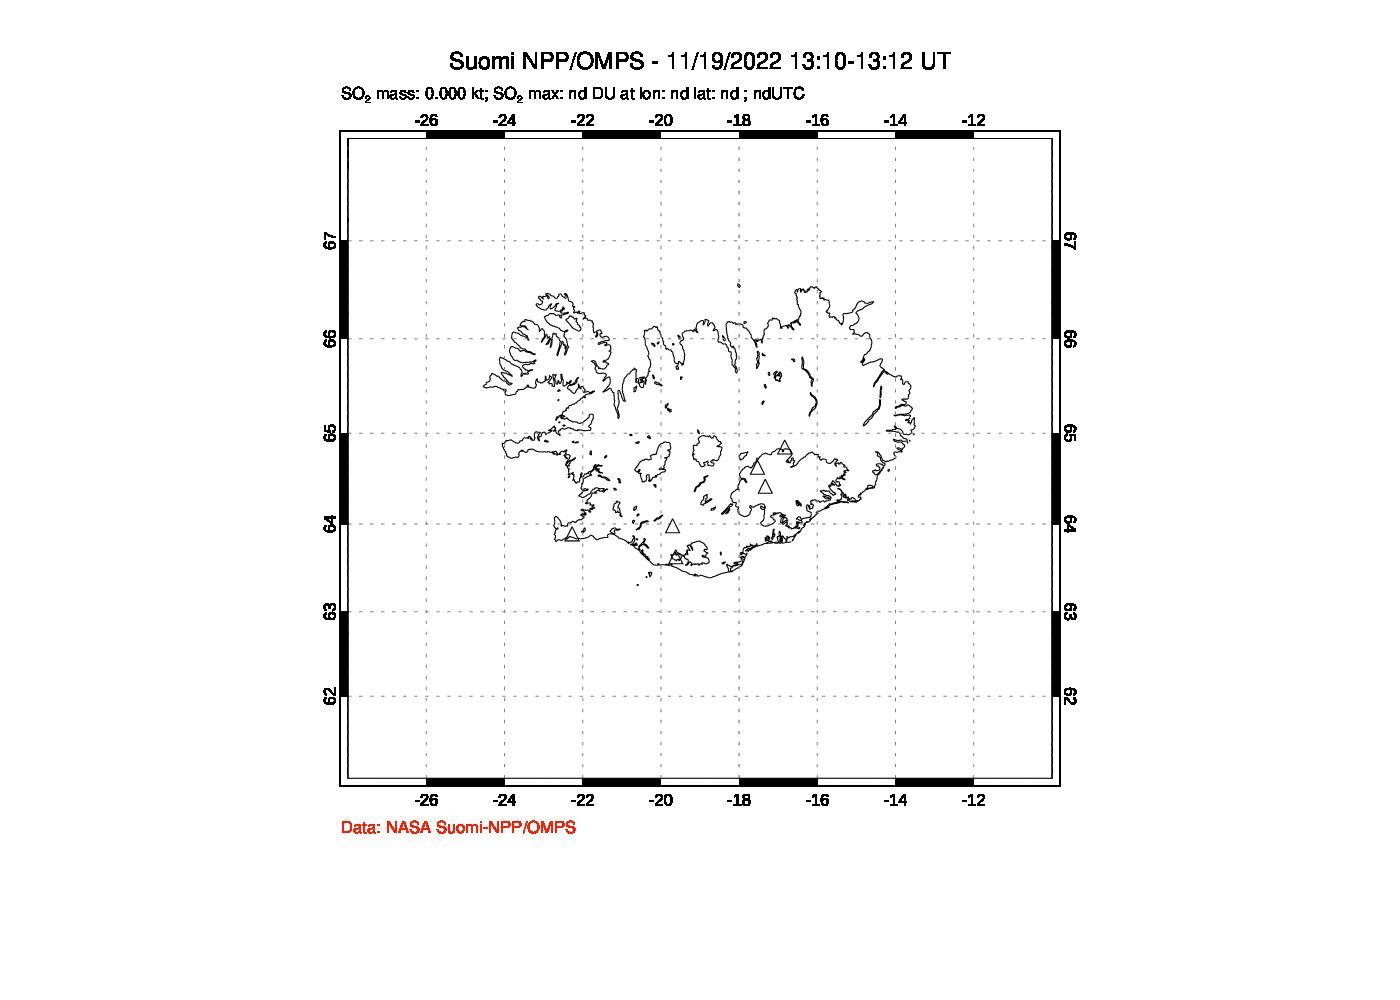 A sulfur dioxide image over Iceland on Nov 19, 2022.